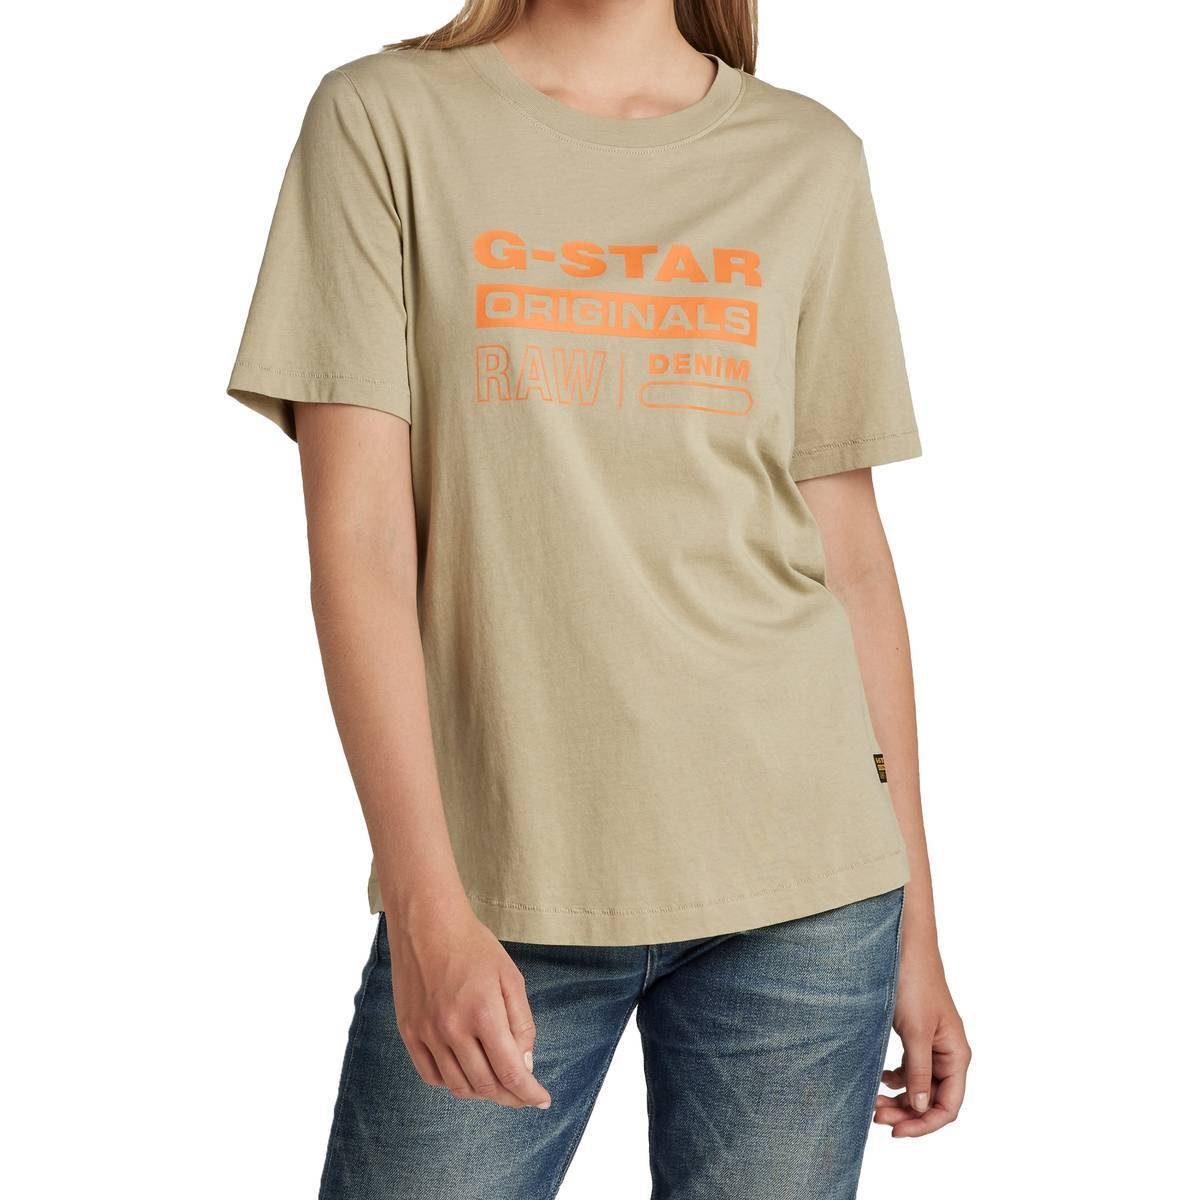 G-Star RAW T-Shirt Originals Regular Moos) - Damen Fit Grün T-Shirt Label (lt